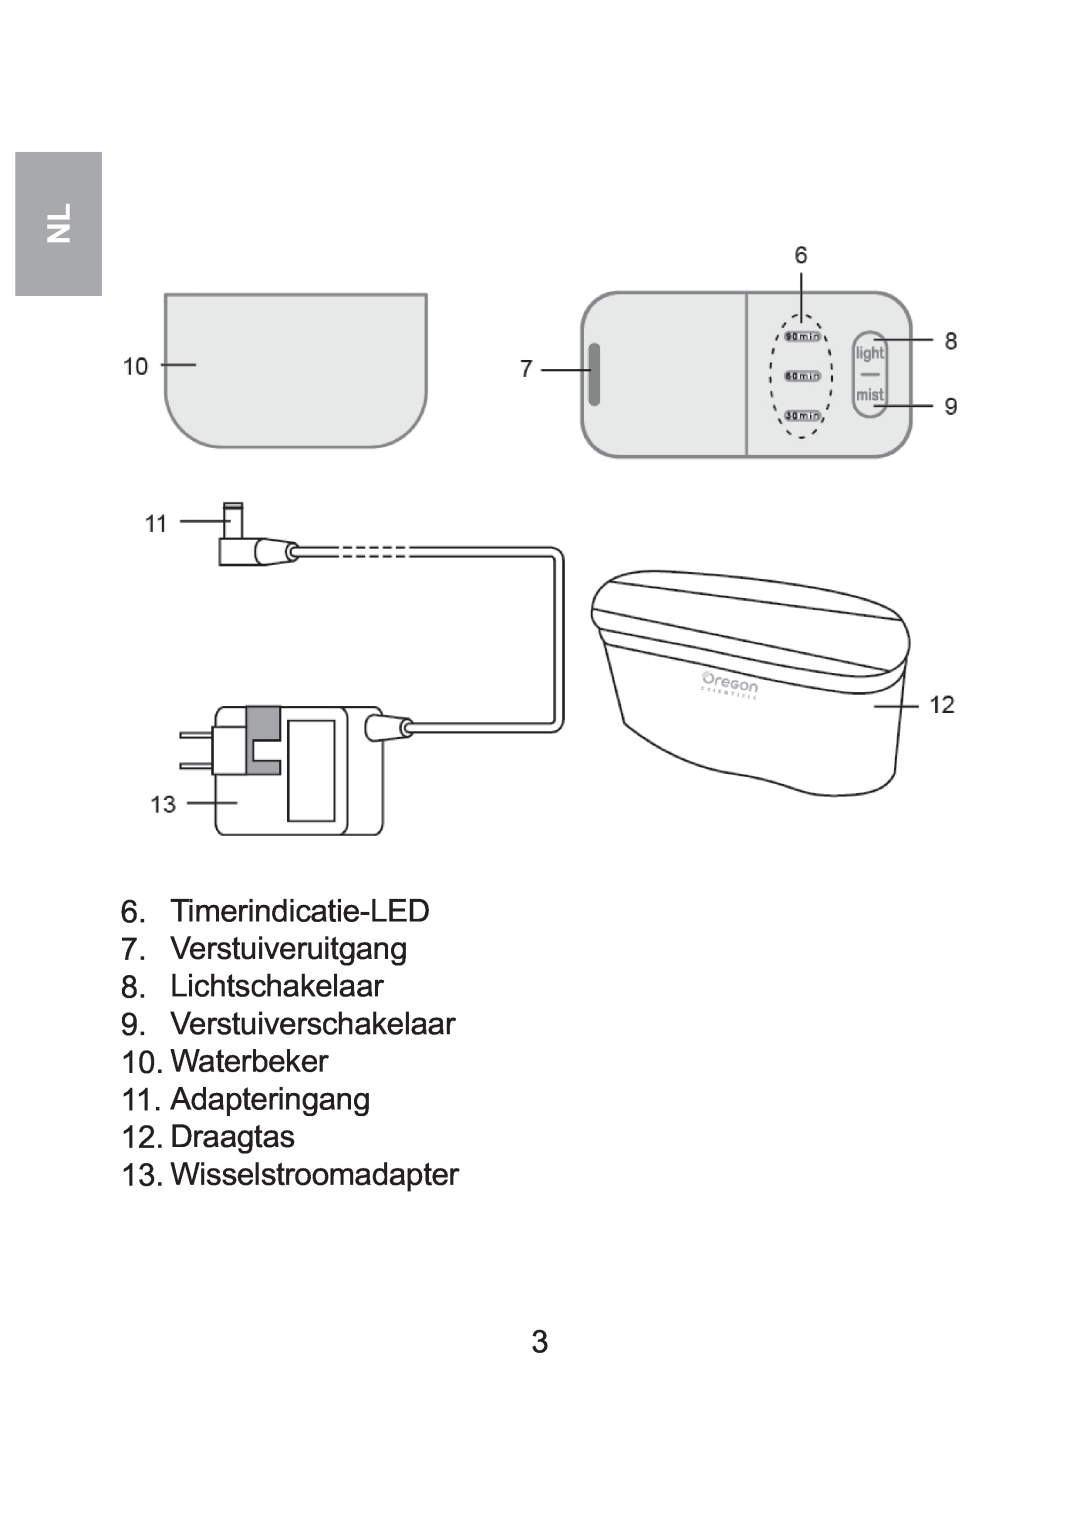 Oregon Scientific WS904 user manual Timerindicatie-LED 7.Verstuiveruitgang, Lichtschakelaar 9.Verstuiverschakelaar 